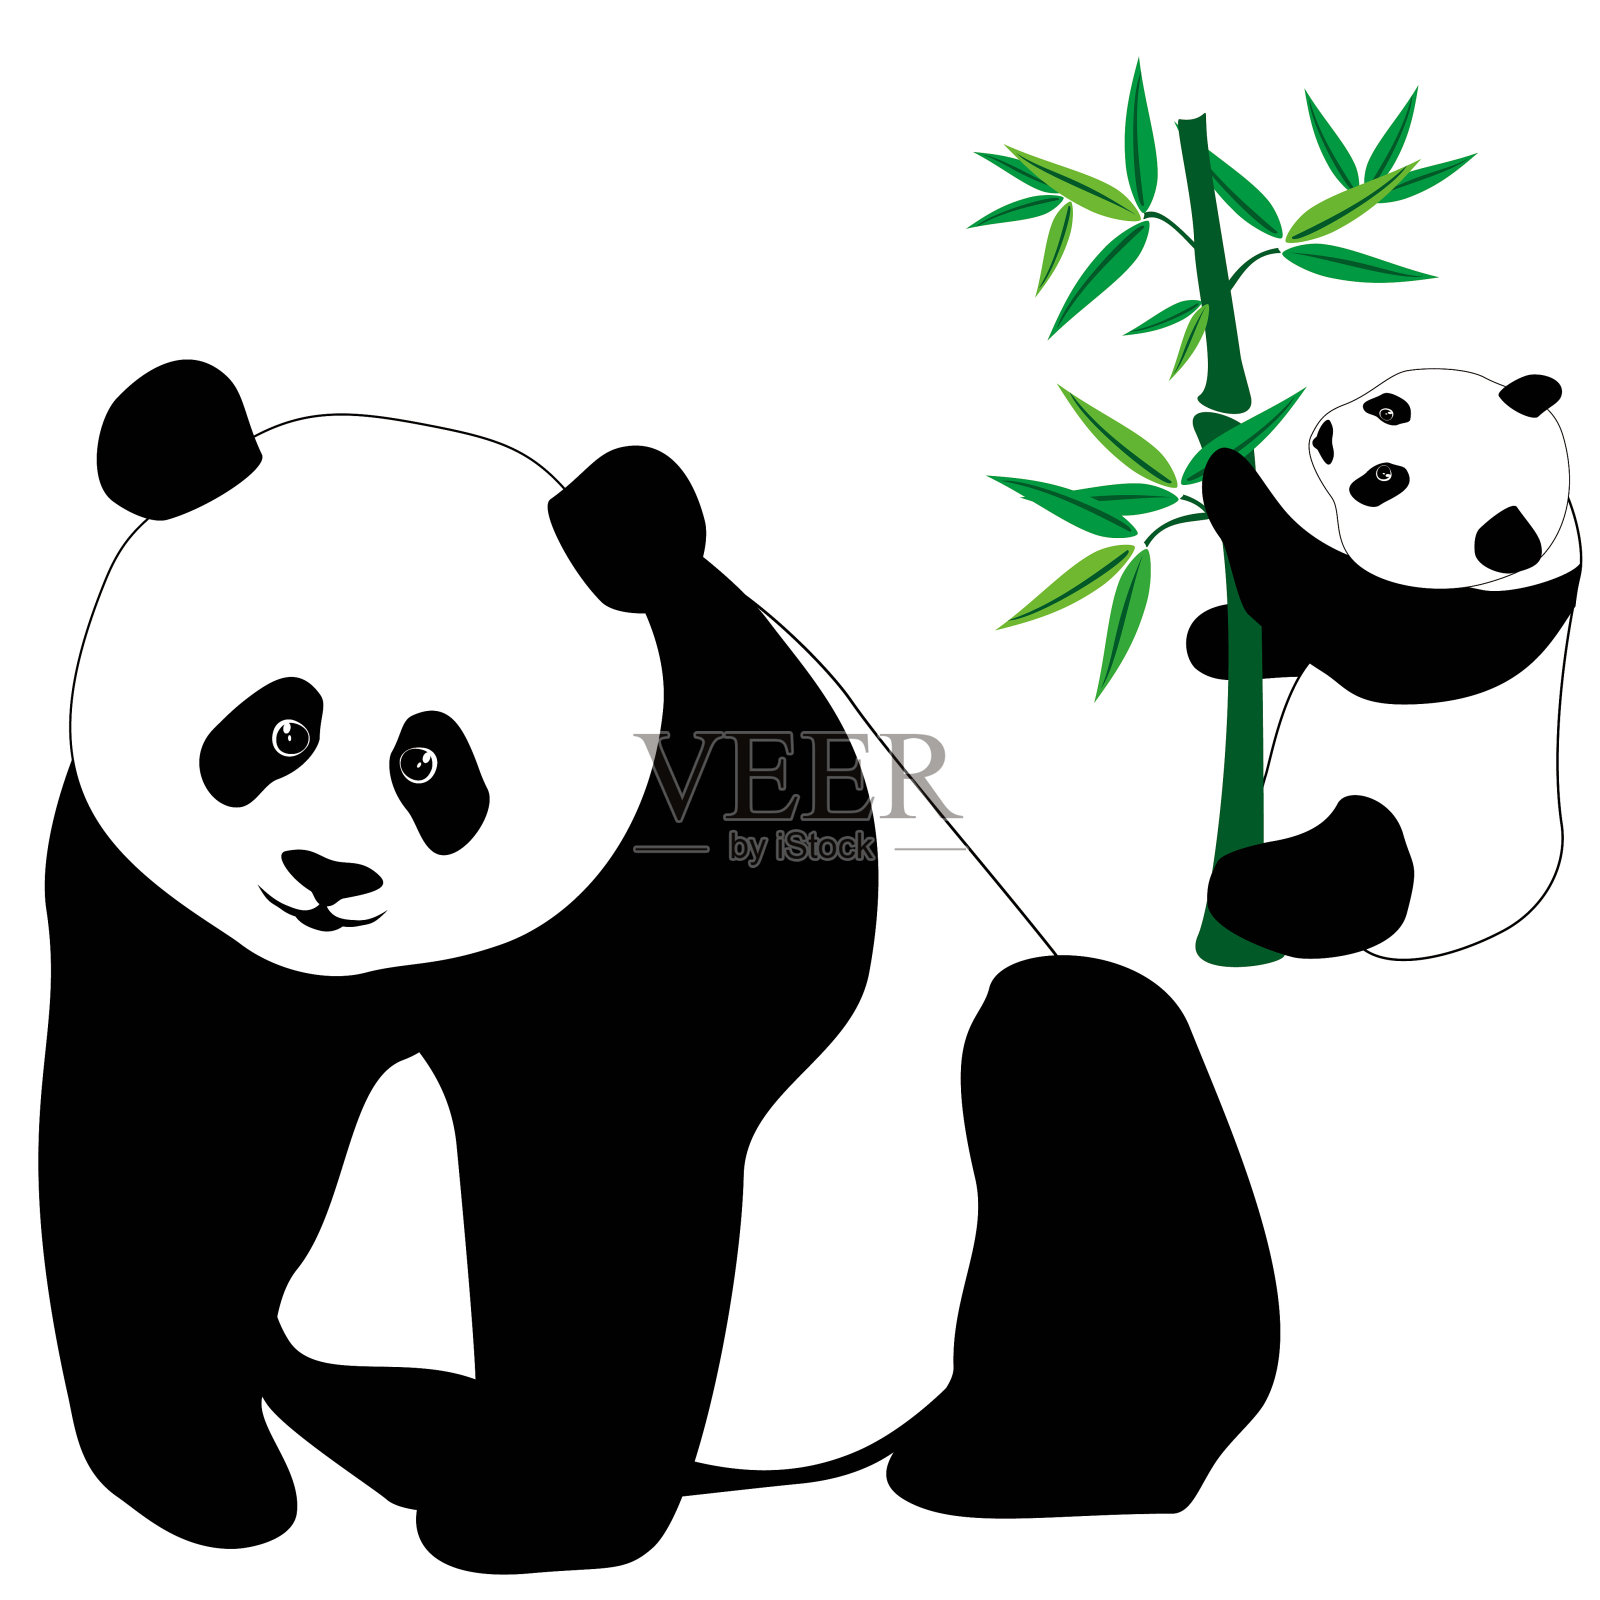 一组可爱的熊猫和竹子插画图片素材